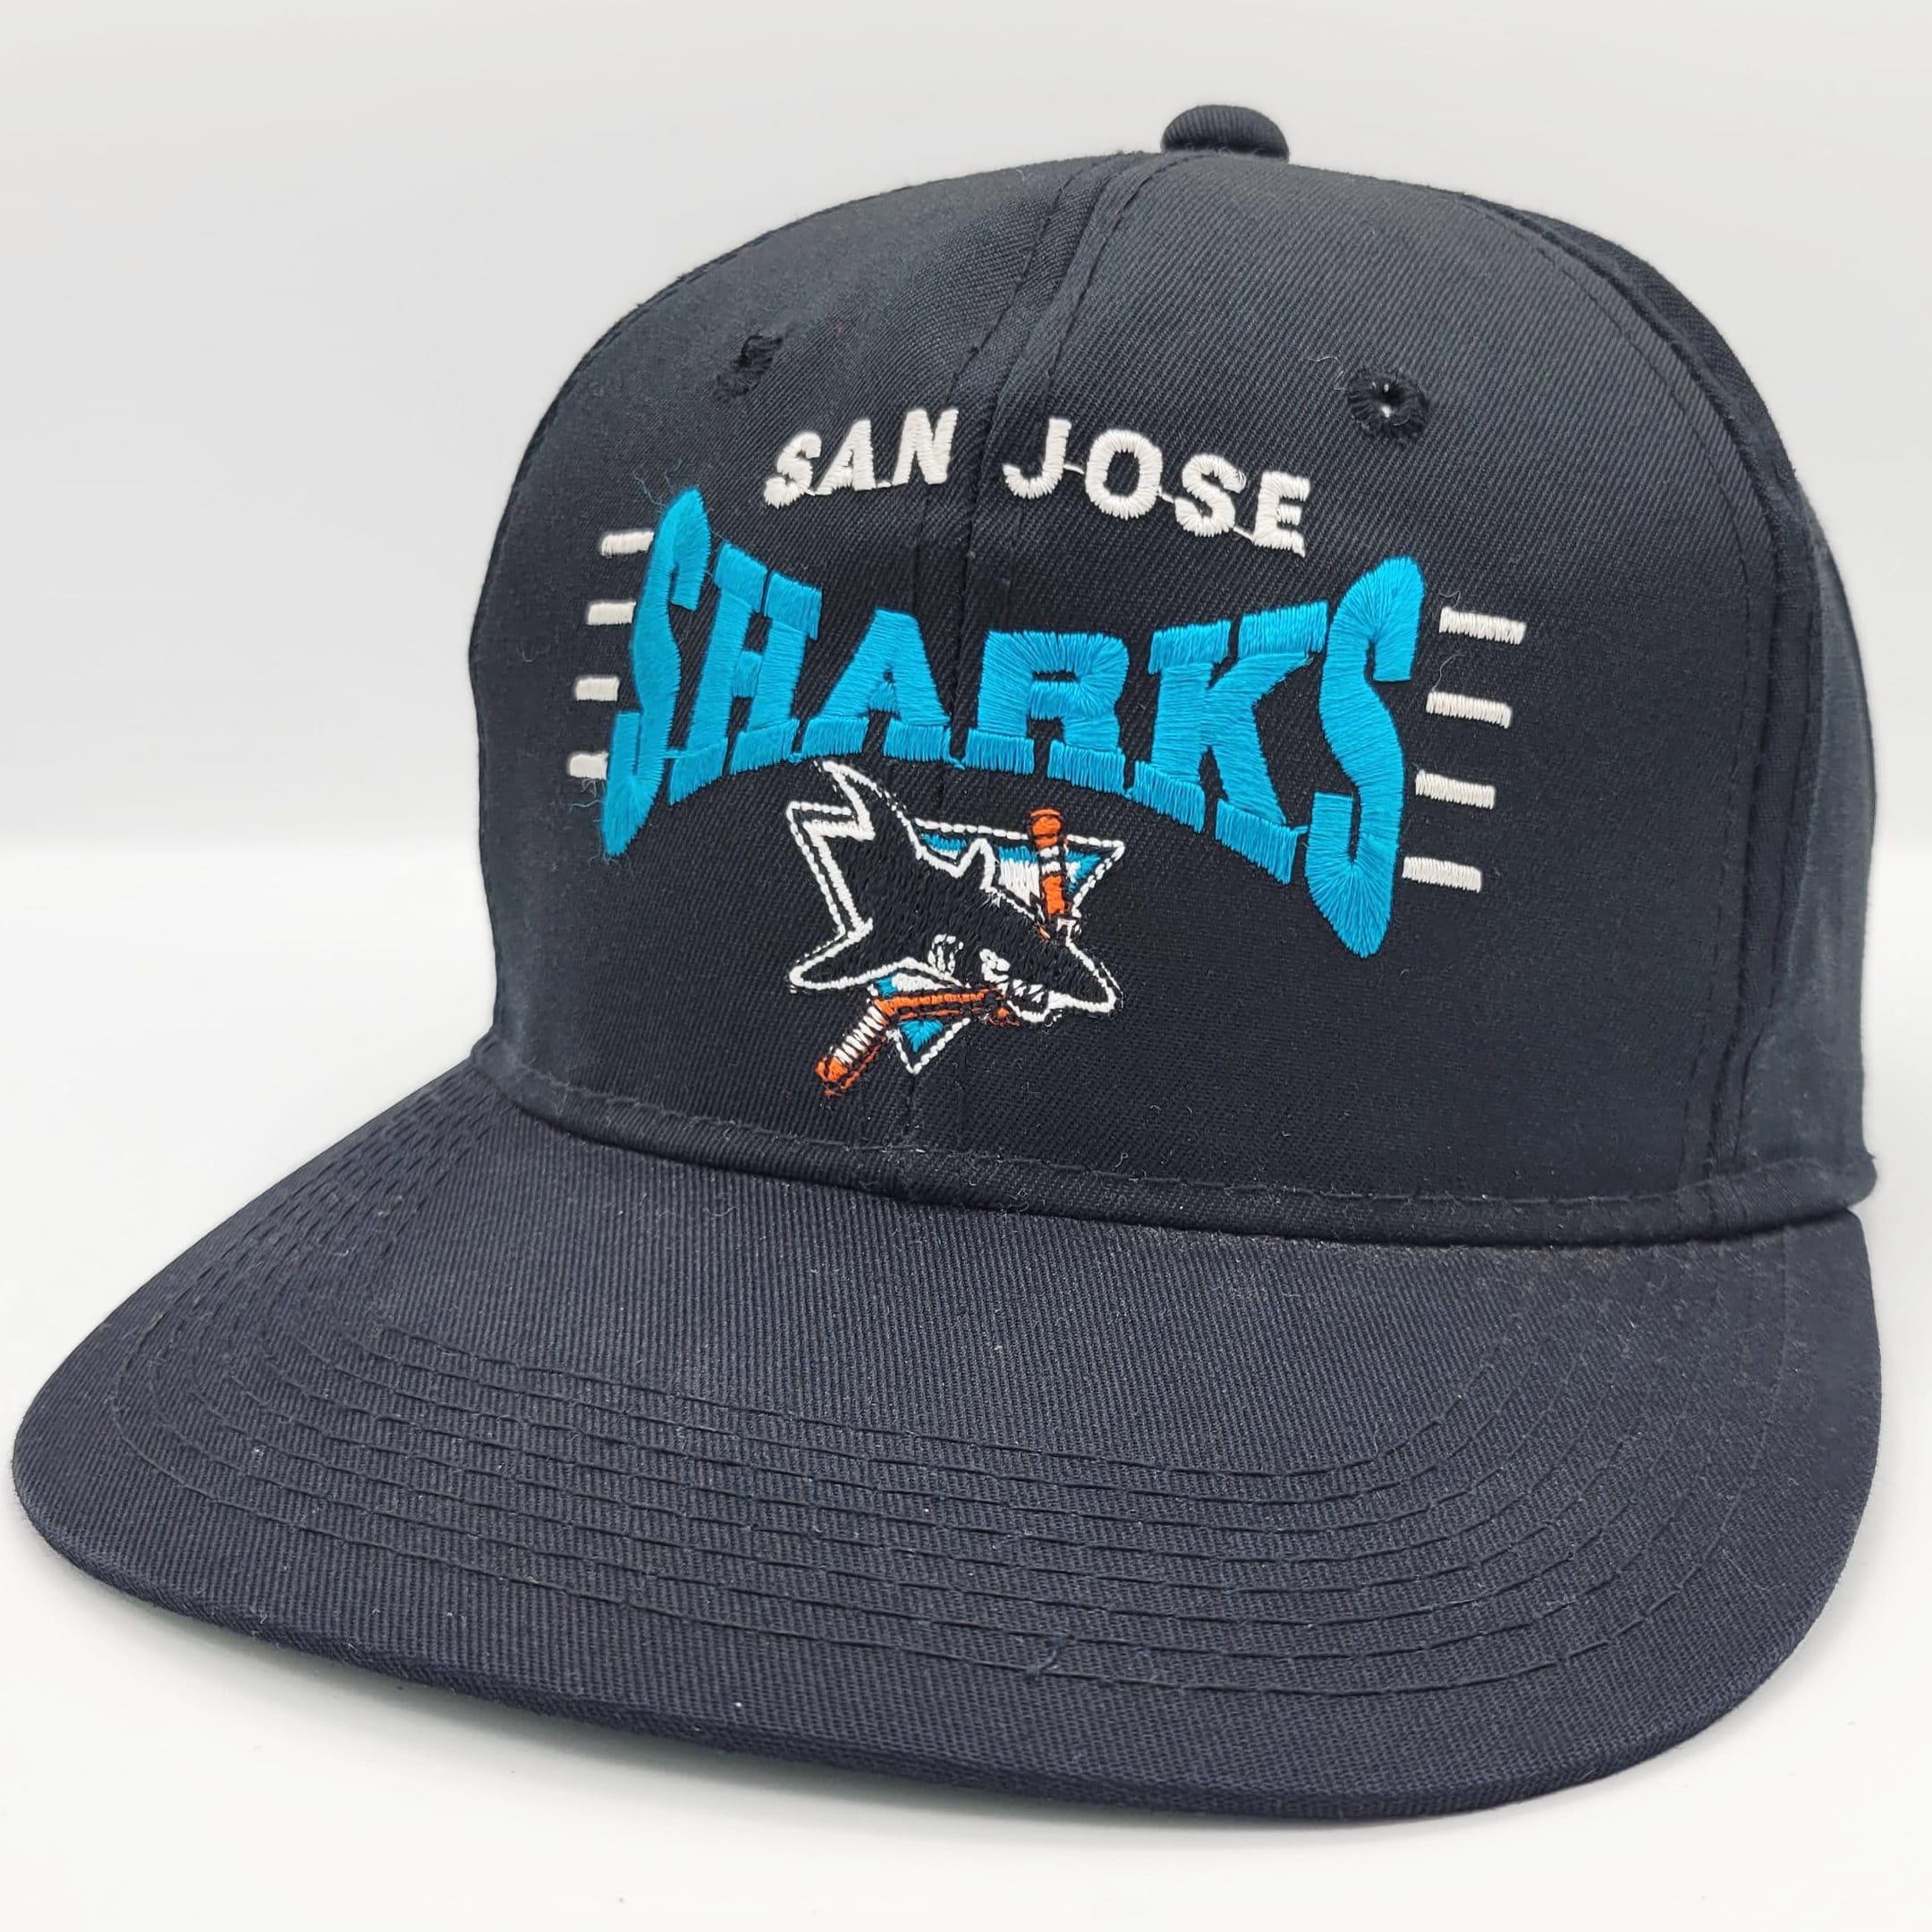 Buy Vintage San Jose Sharks Heather Snapback Hat Online at